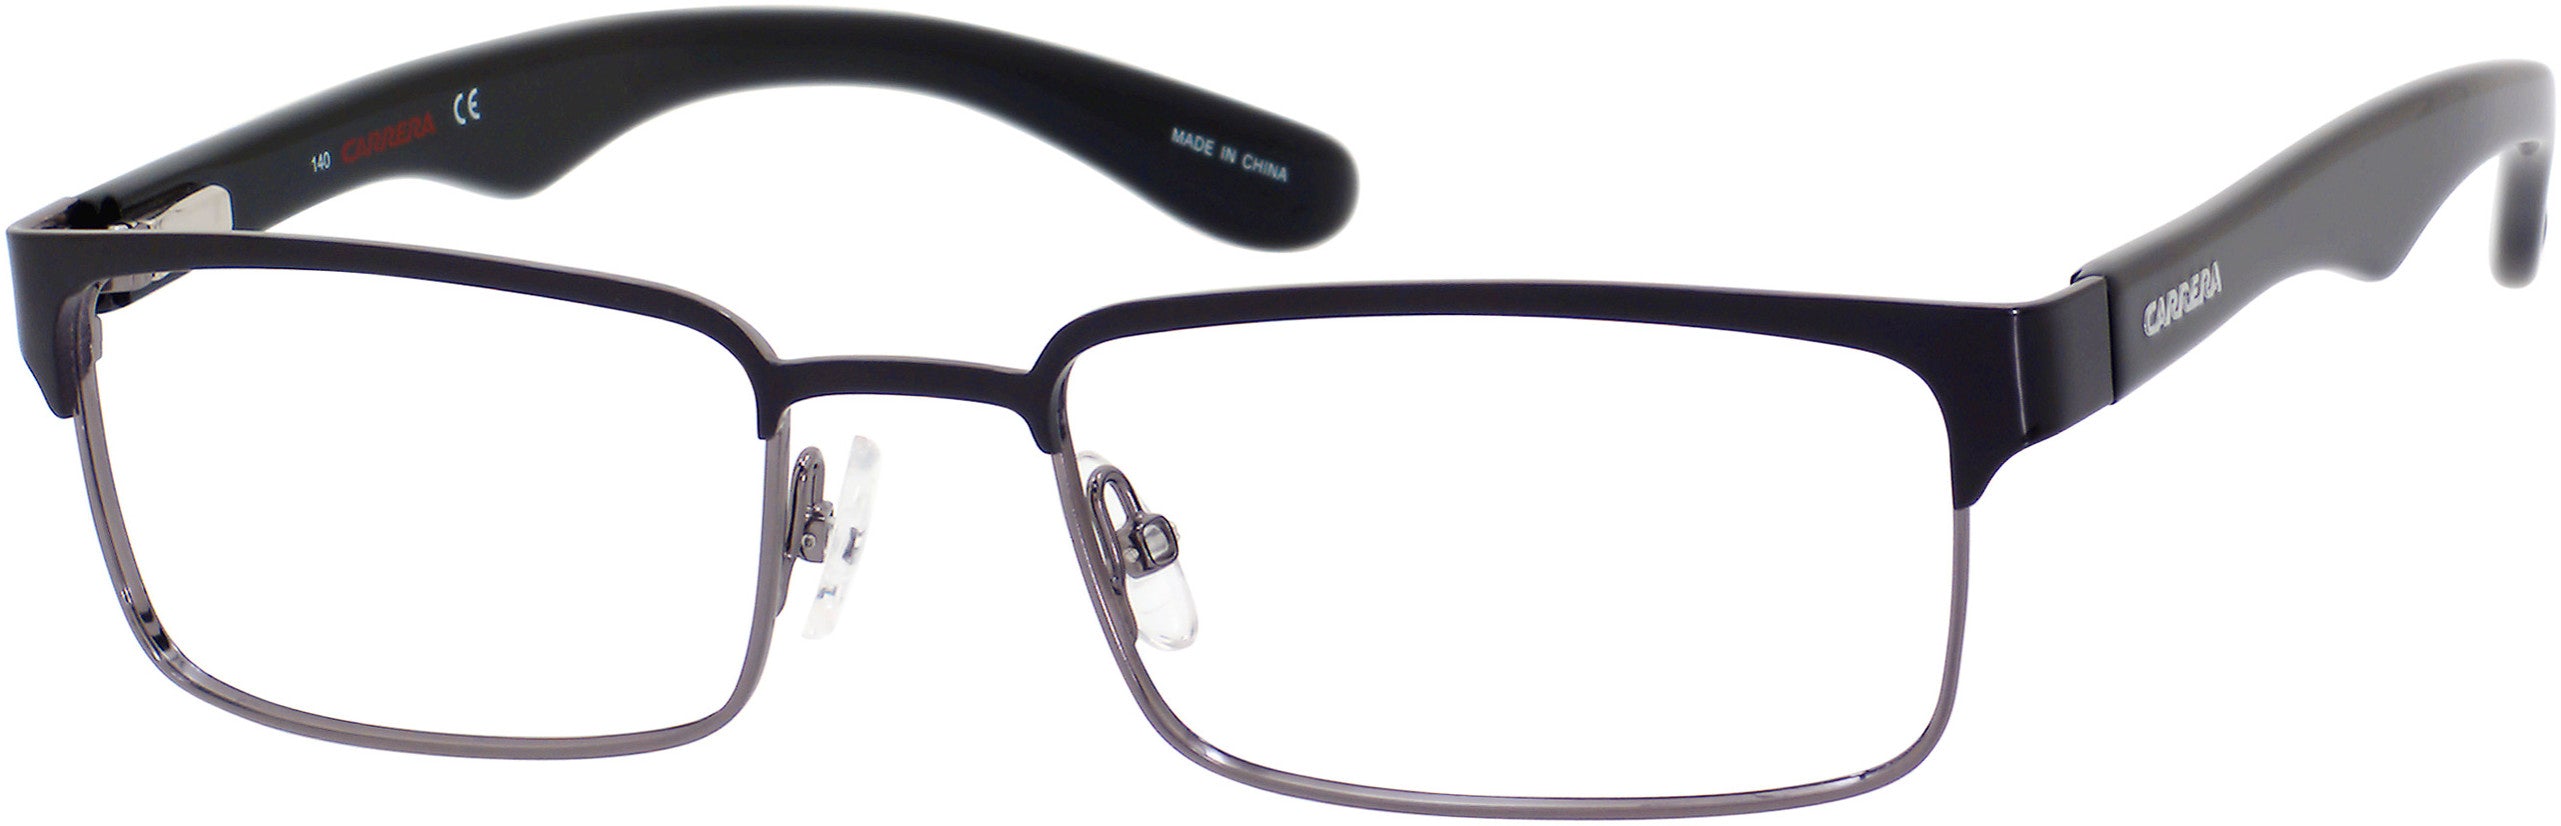  Carrera 6606 Rectangular Eyeglasses 0J0P-0J0P  Black / Dark Ruthenium (00 Demo Lens)